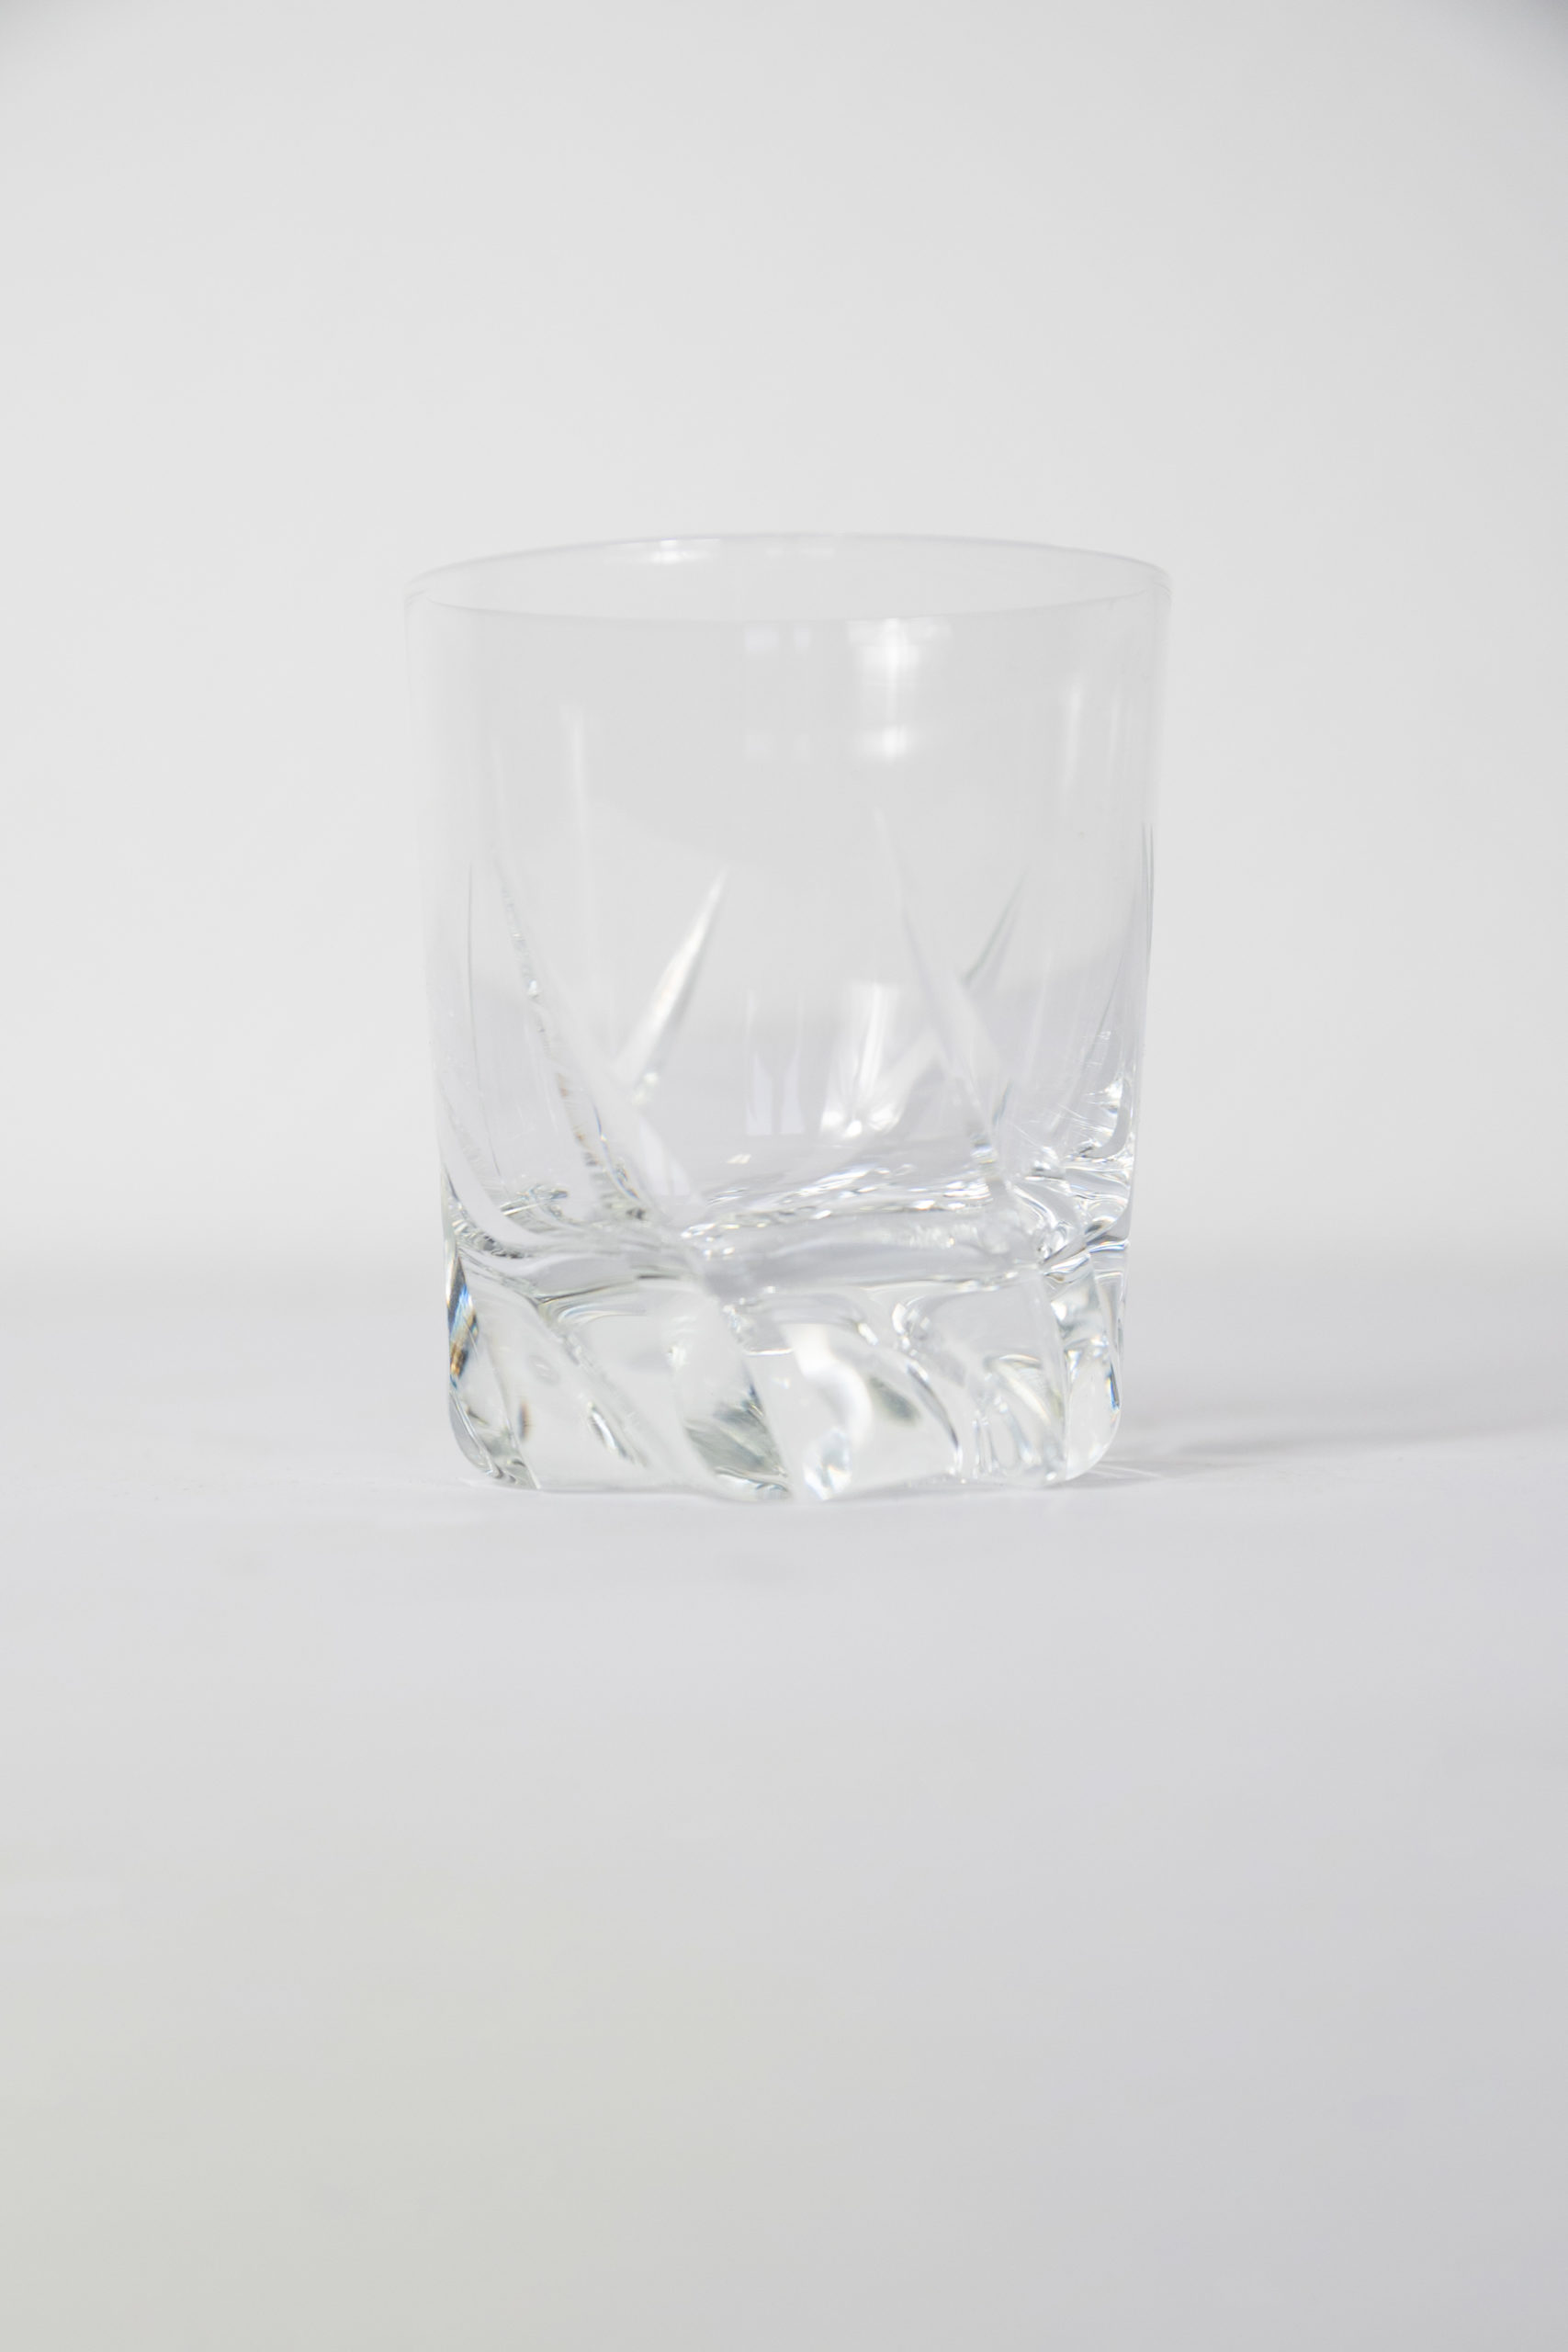 verres-porto-cristal-daum-paris-verrerie-luxe-art-dela-table-aurore-morisse-chestret5-affaireconclue1